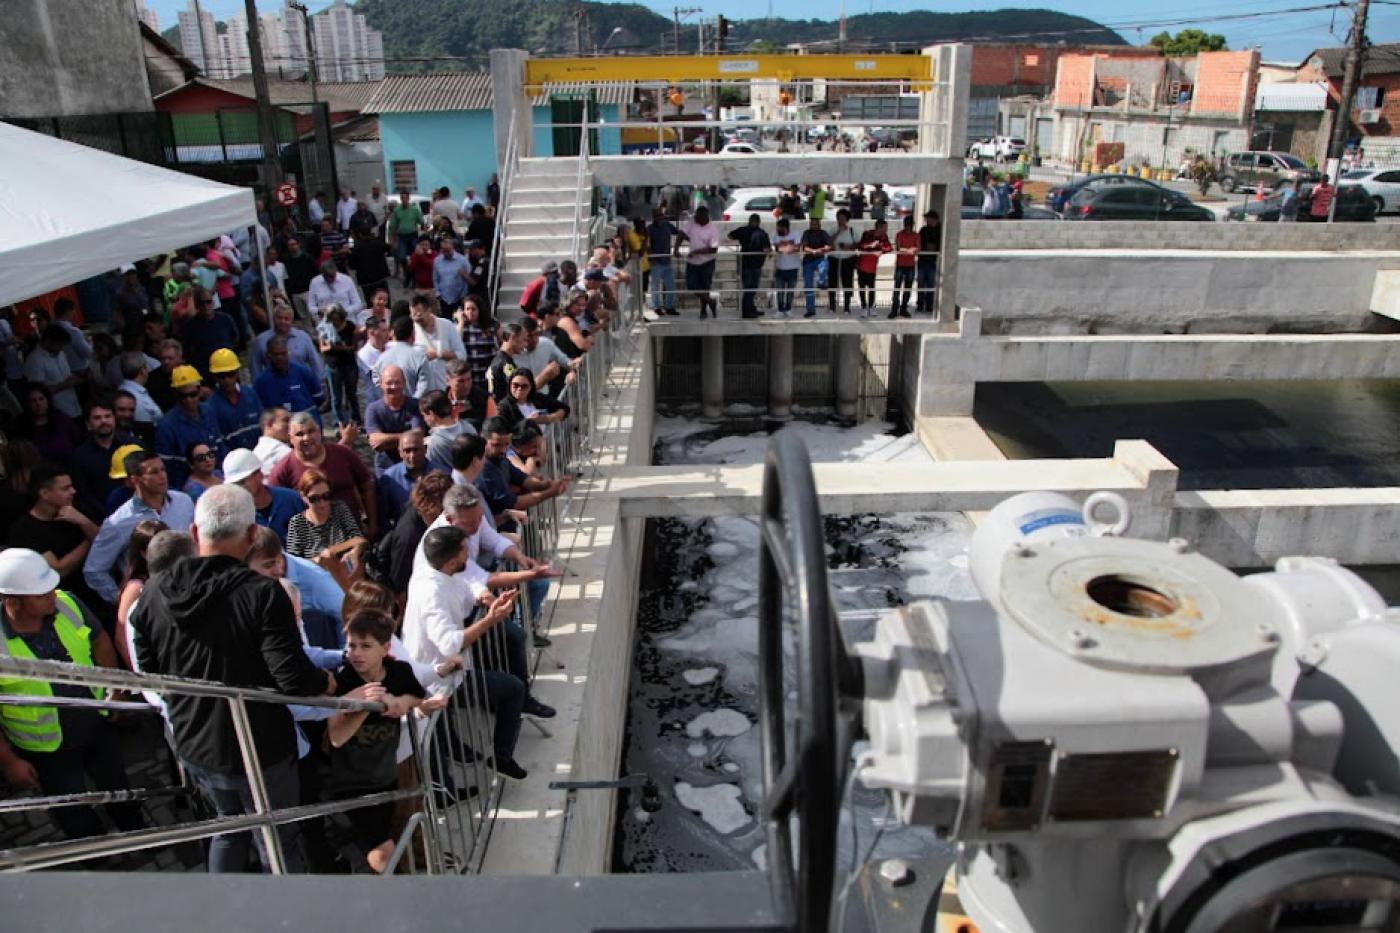 Prefeitura conclui estação elevatória de esgoto no Satélite - Prefeitura de  São José dos Campos